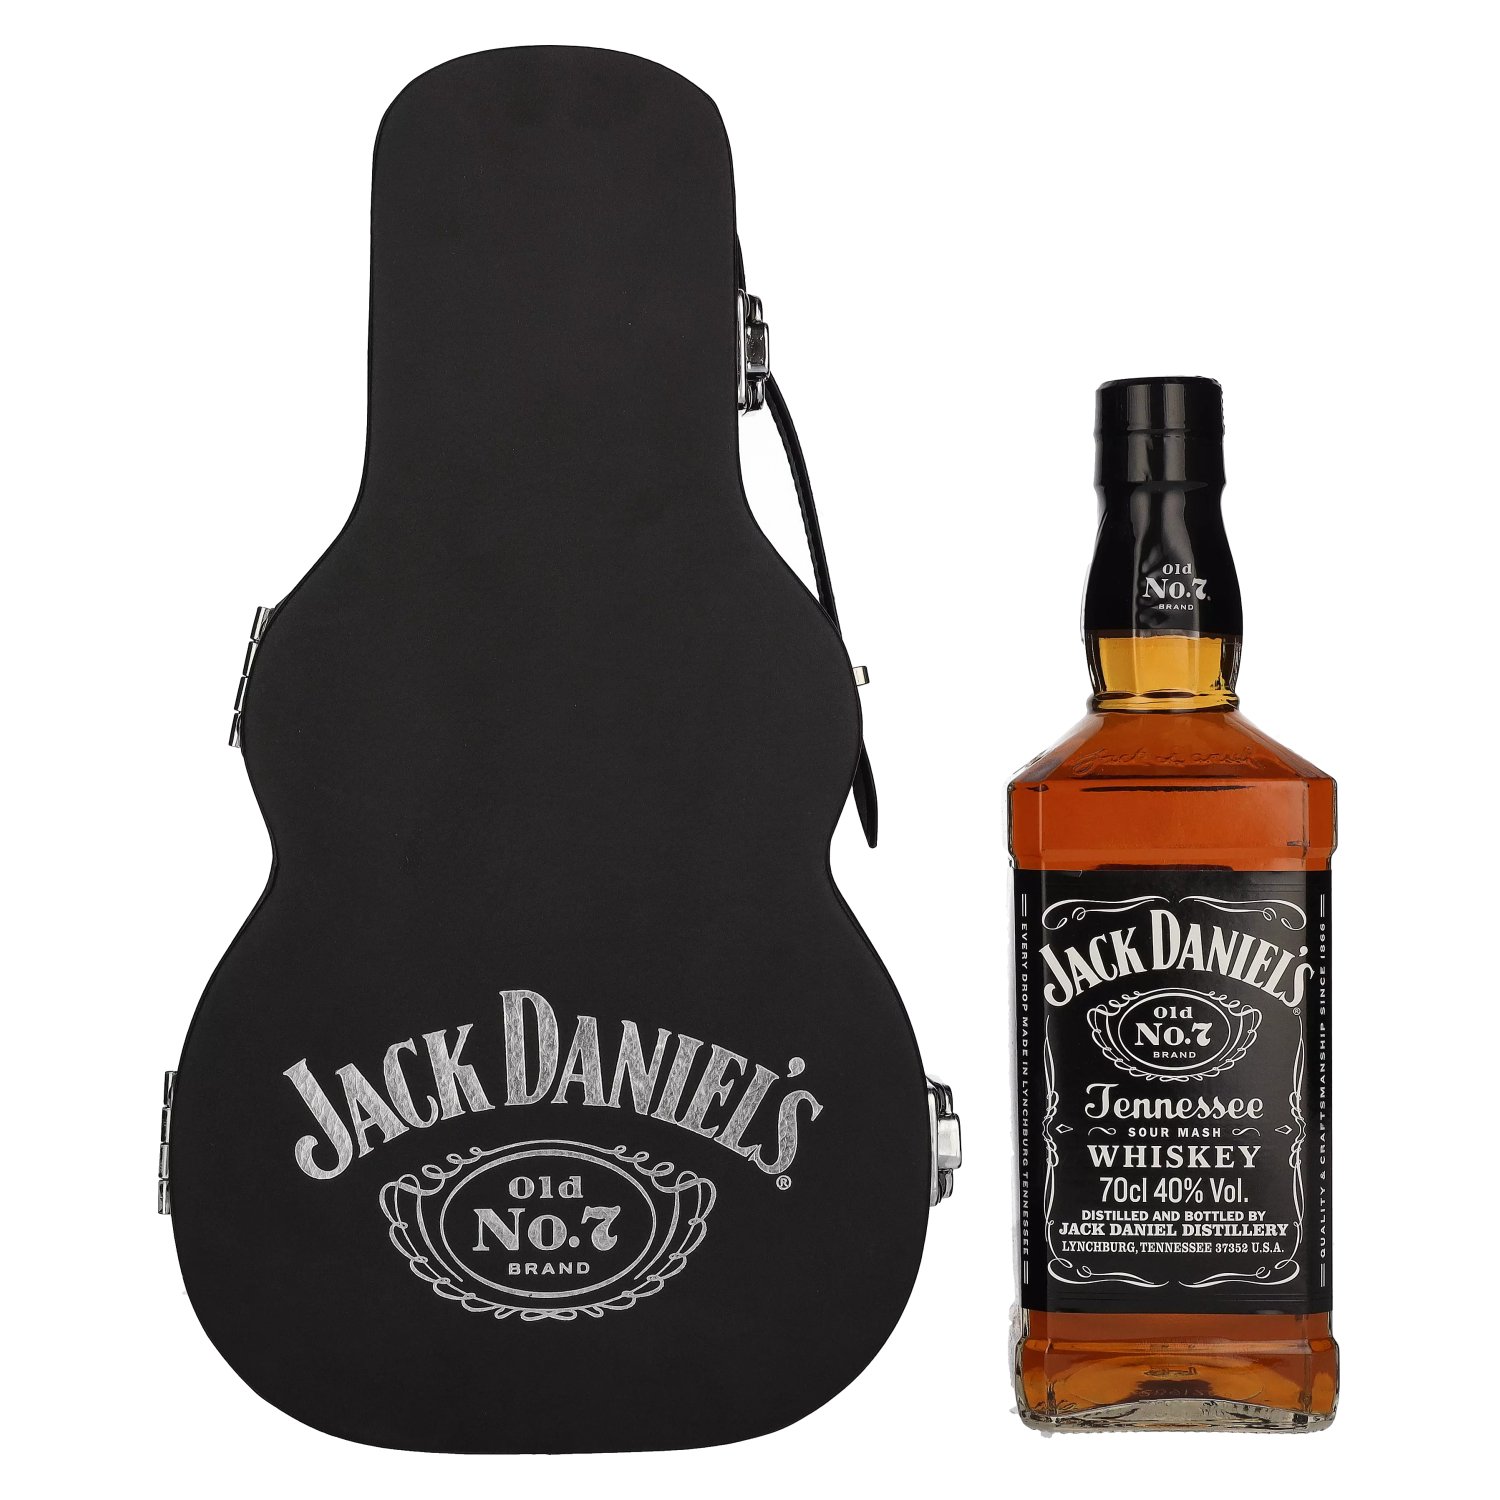 Jack Daniel's Whisky Name Card Holder NEW 